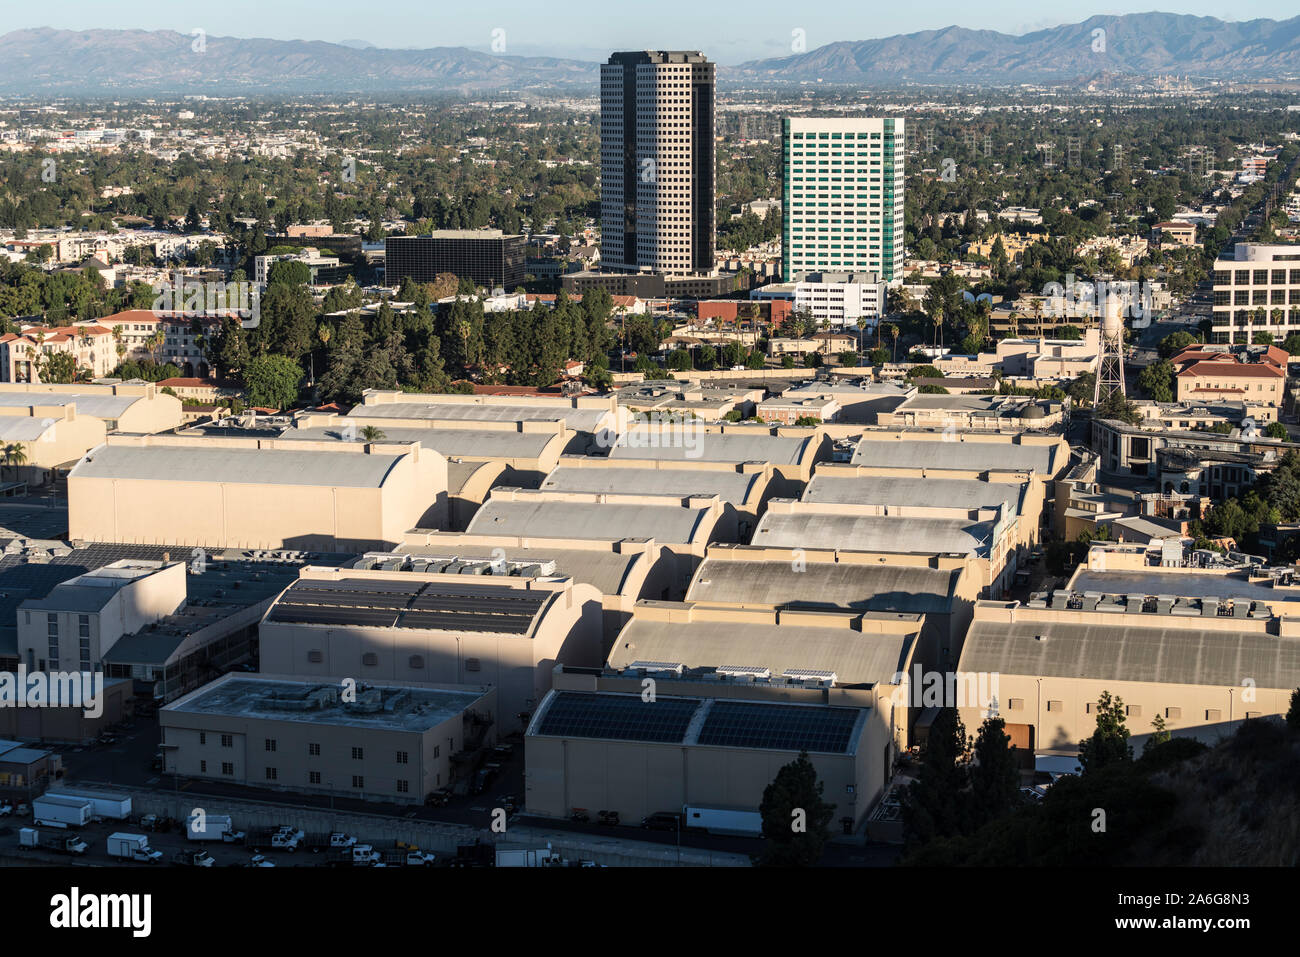 Burbank, Kalifornien, USA - 20. Oktober 2019: Morgen Blick auf historische Warner Bros Studio sound Bühnen und Burbank Media Bezirk Gebäude im San Stockfoto